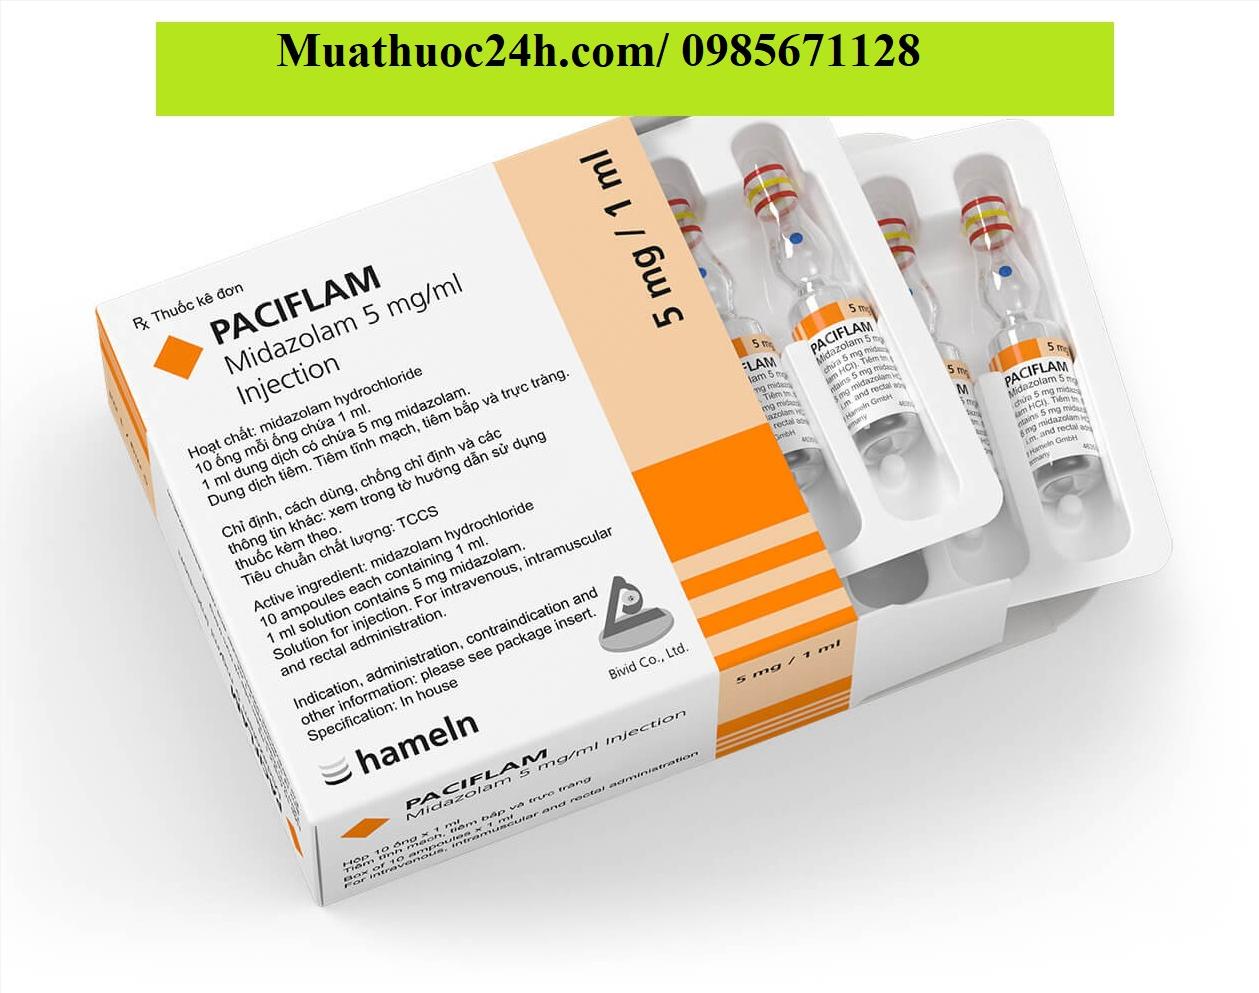 Thuốc Paciflam Midazolam 5mg/ml giá bao nhiêu mua ở đâu?